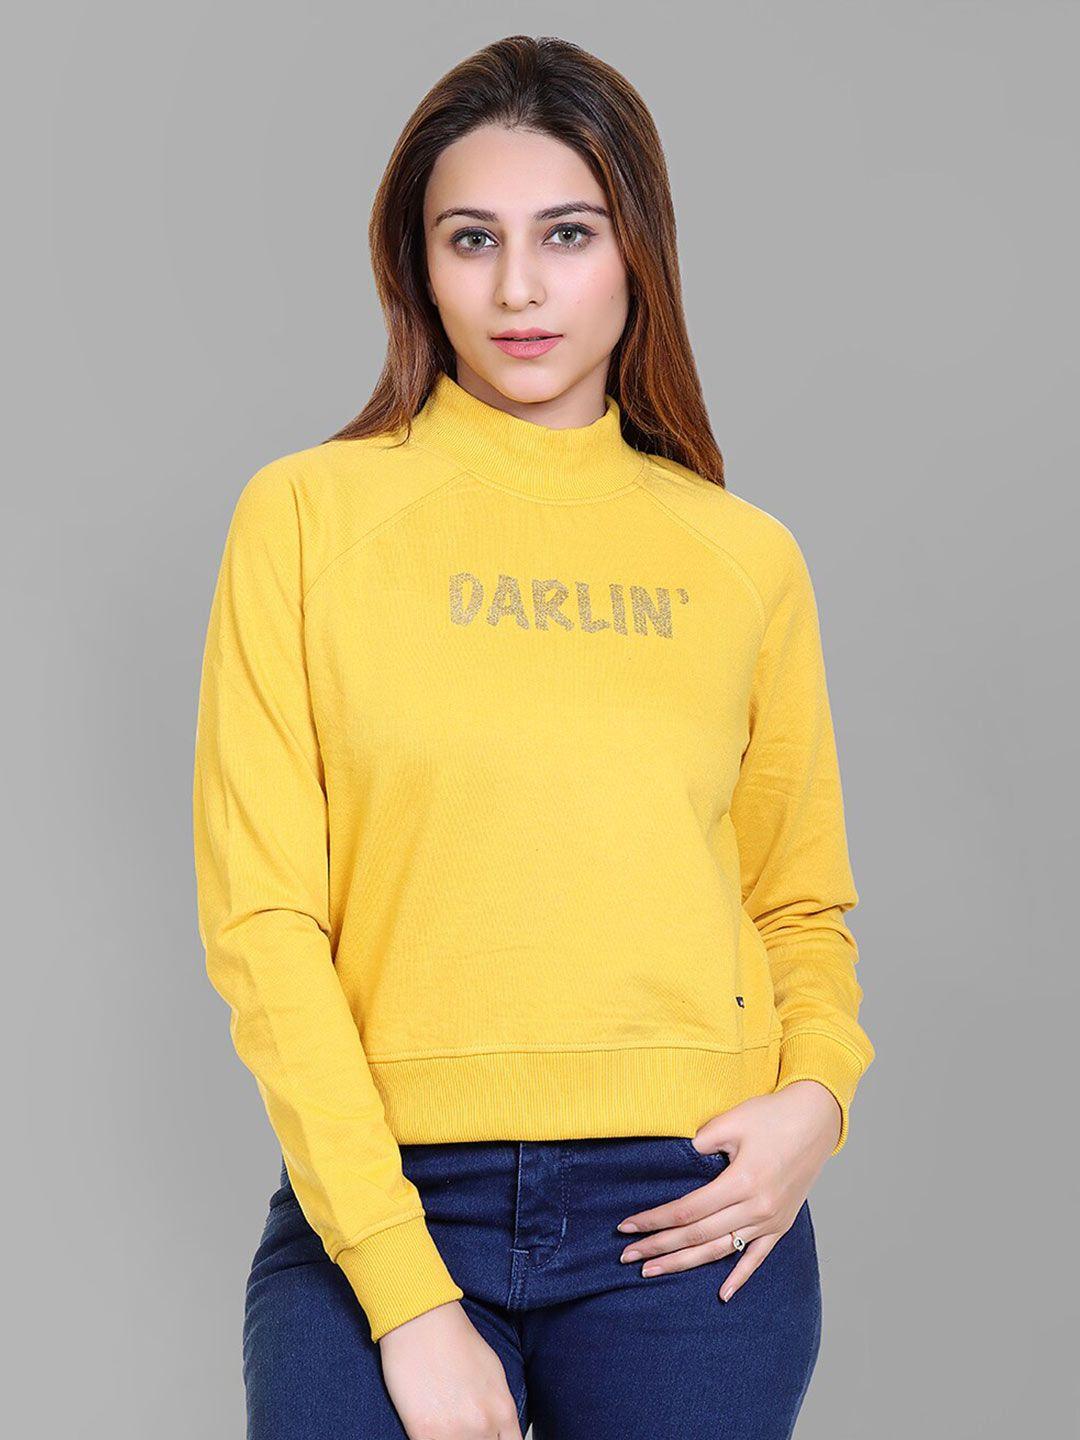 club york women yellow sweatshirt